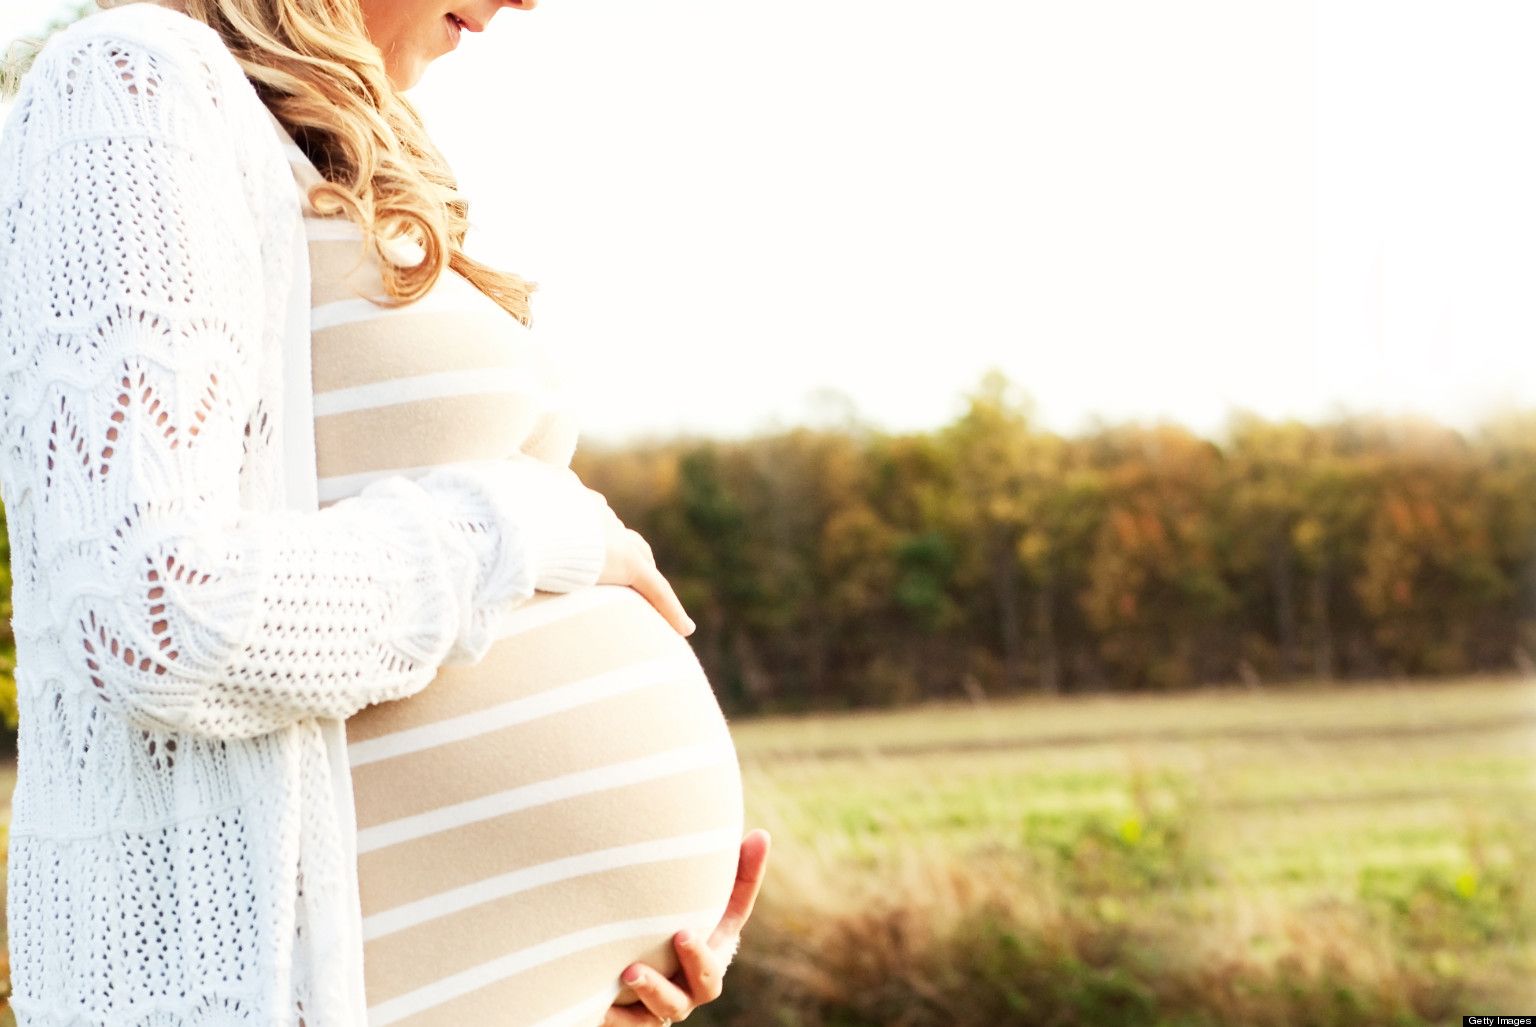 3,520 Pregnancy Wallpaper Images, Stock Photos & Vectors | Shutterstock